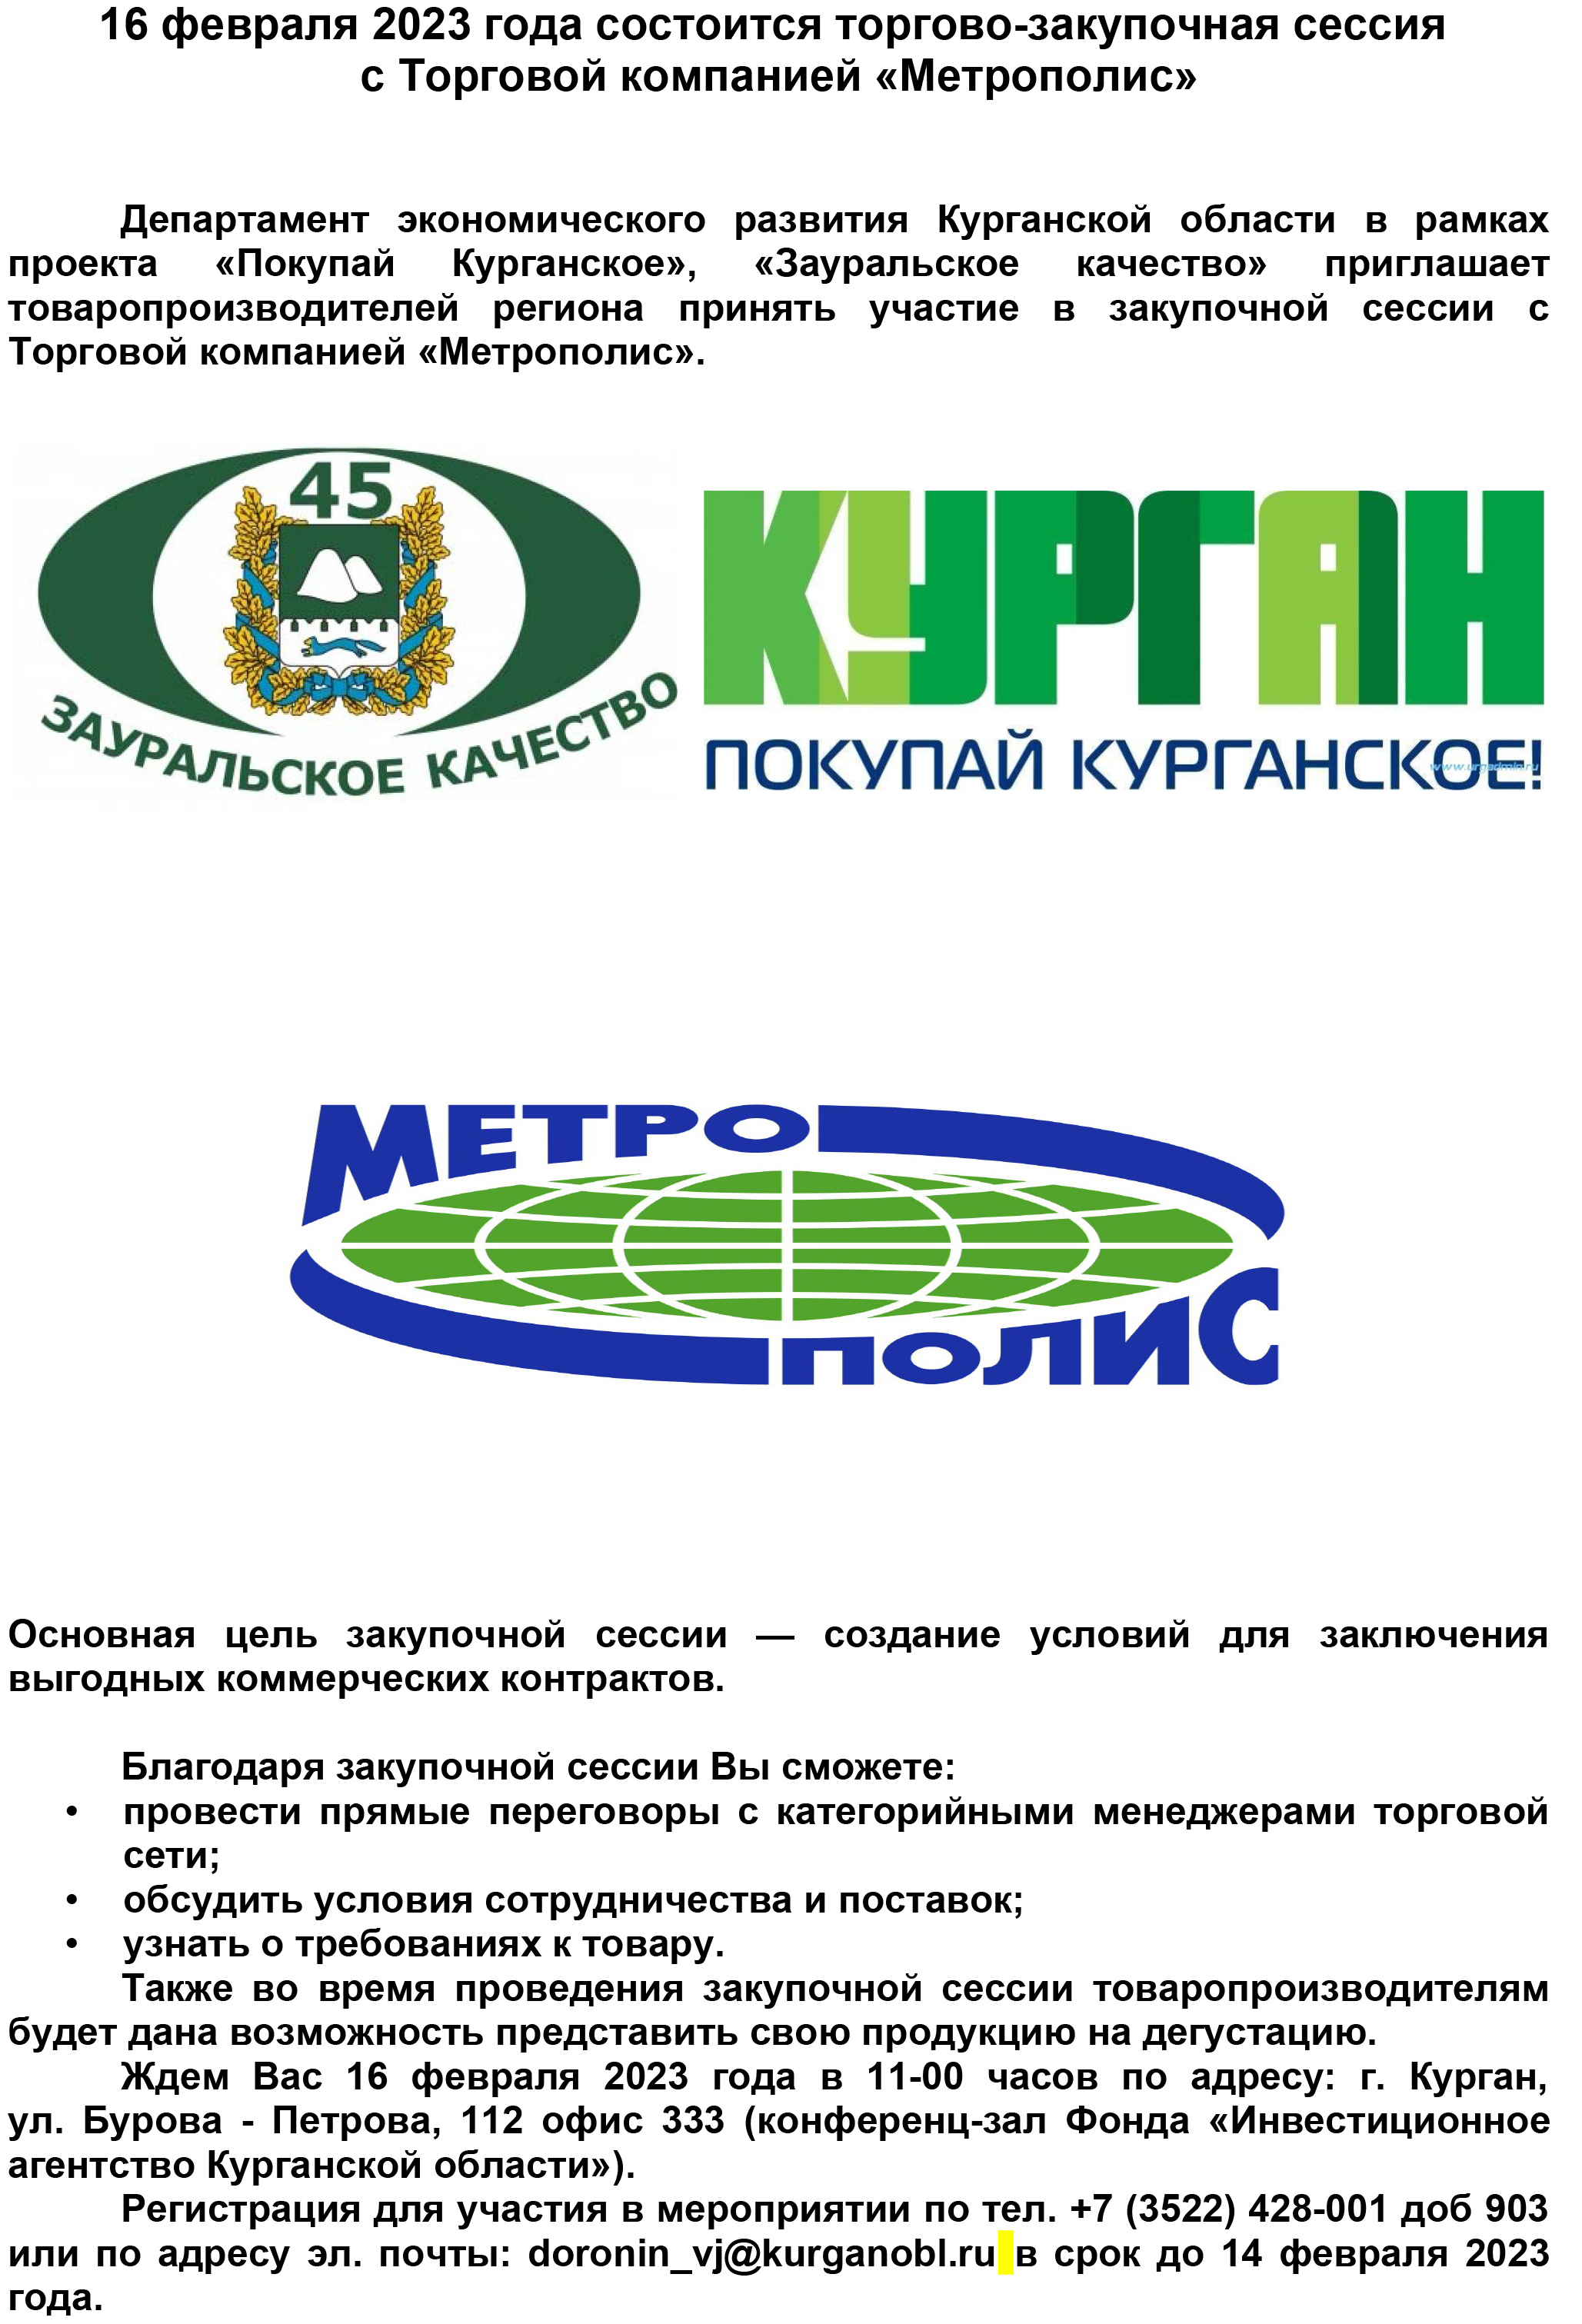 16 февраля 2023 года состоится торгово-закупочная сессия с Торговой компанией «Метрополис»